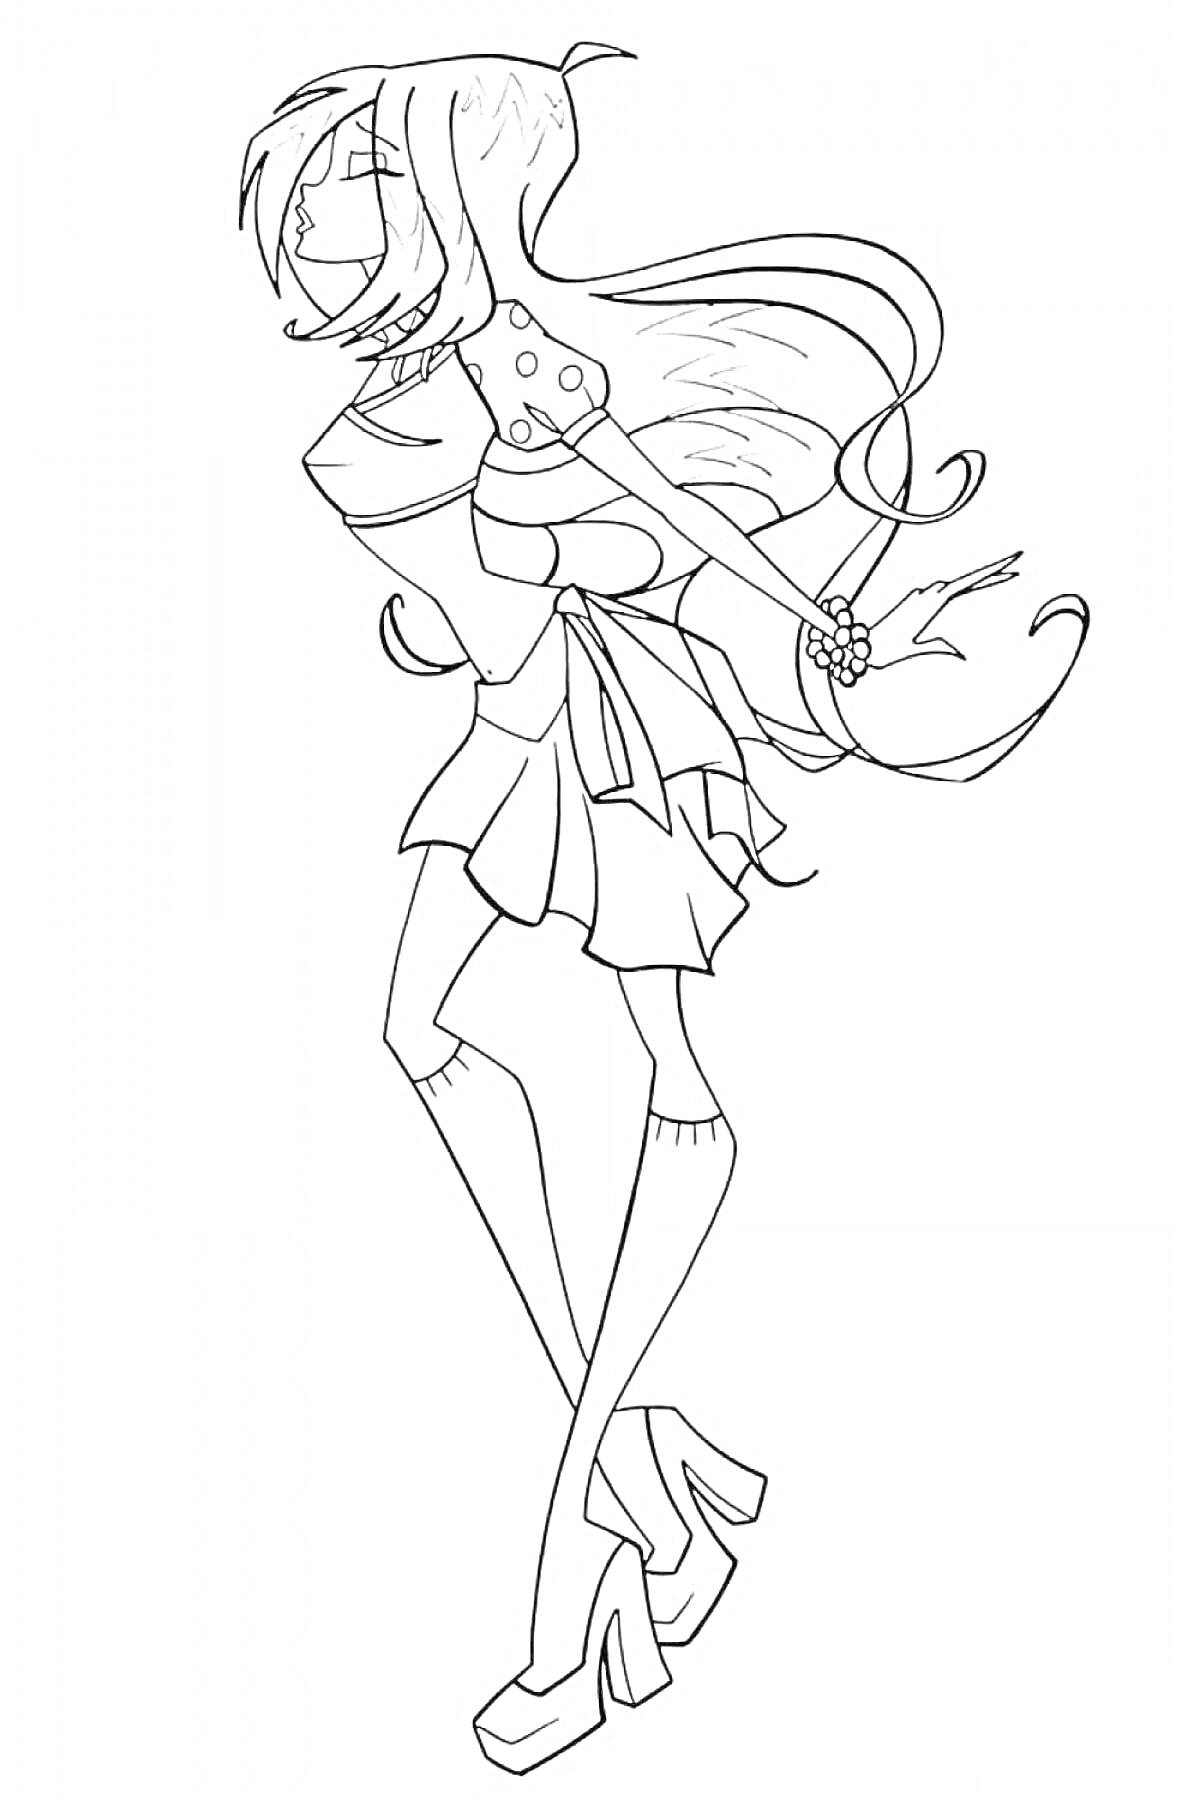 Раскраска Девушка-маг с длинными волосами, в платье и на высоких каблуках, с цветочными украшениями на руке